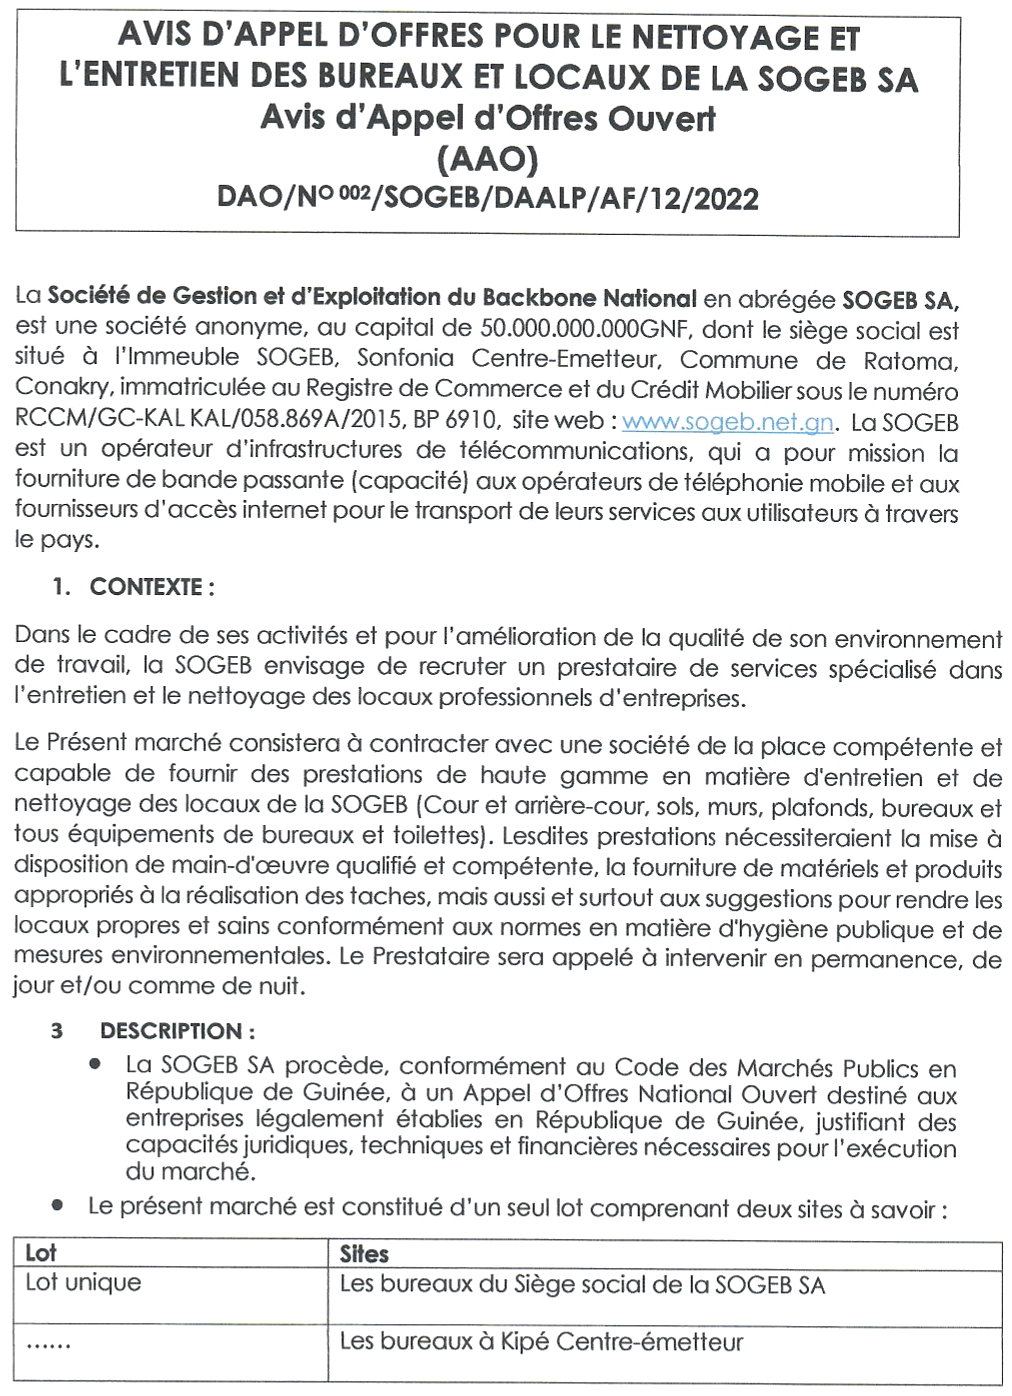 1.1	Avis D'appel D'offres Pour Le Nettoyage Et L'entretien Des Bureaux Et Locaux De La SOGEB SA | Page 1